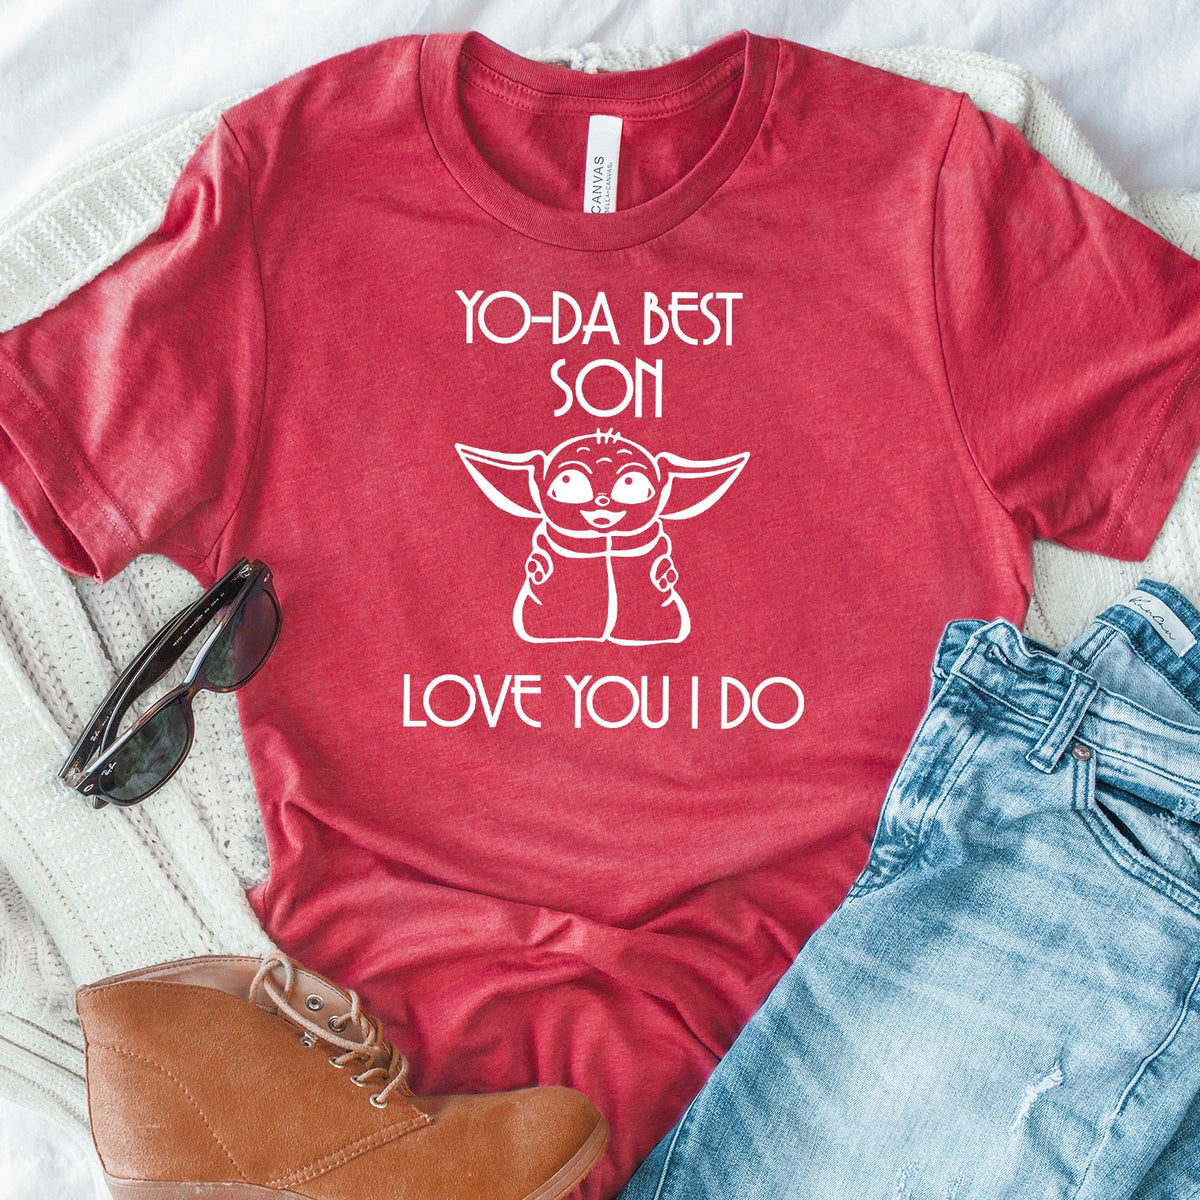 Yo-Da Best Son Love You I Do - Short Sleeve Tee Shirt